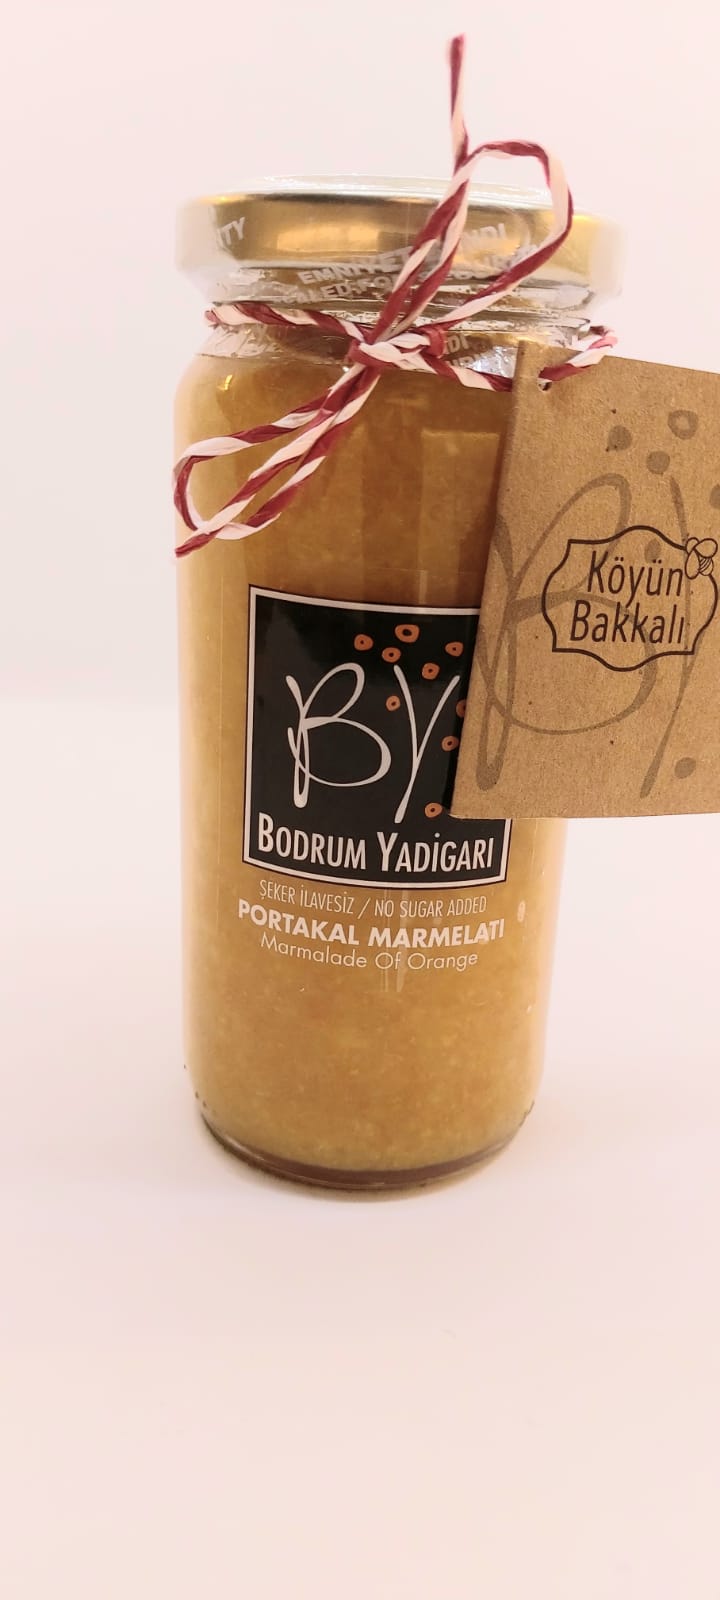 Köyün Bakkalı & Bodrum Yadigarı Portakal Marmelatı